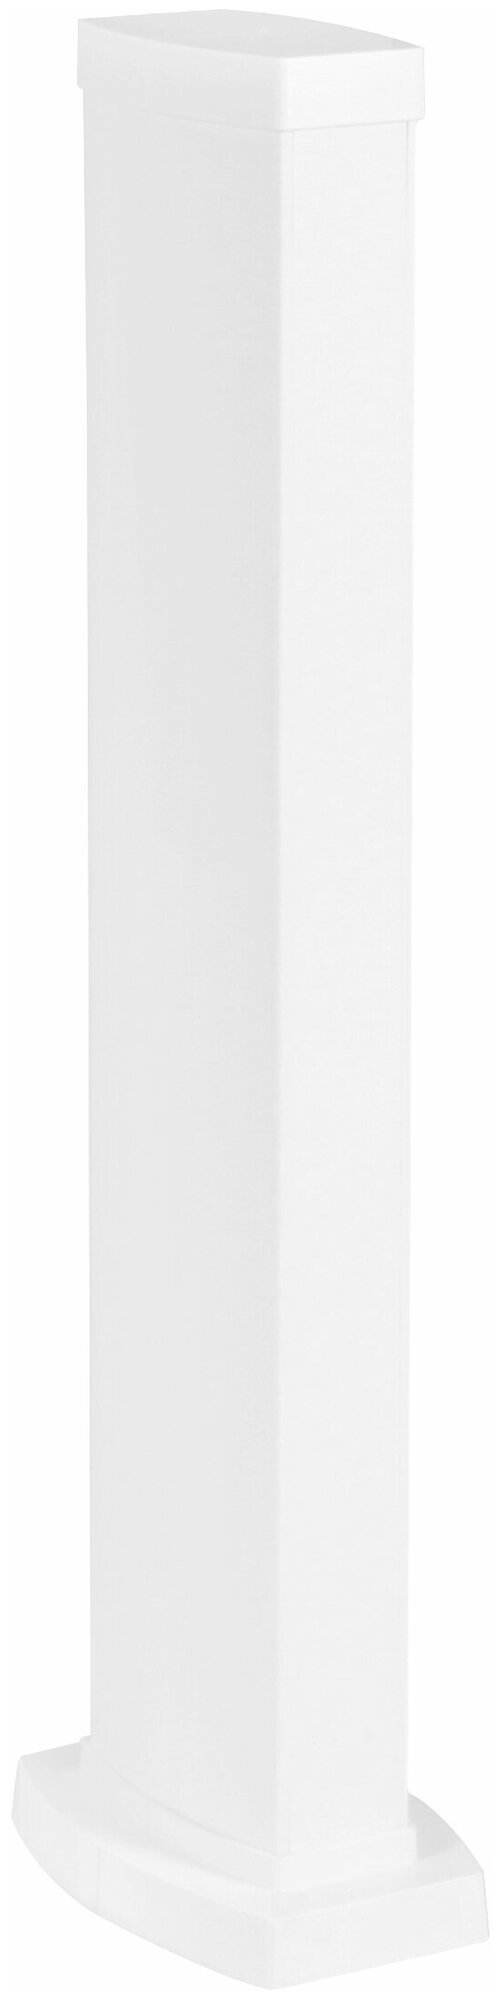 Snap-On мини-колонна пластиковая с крышкой из пластика 2 секции, высота 0,68 метра, цвет белый Legrand 653023